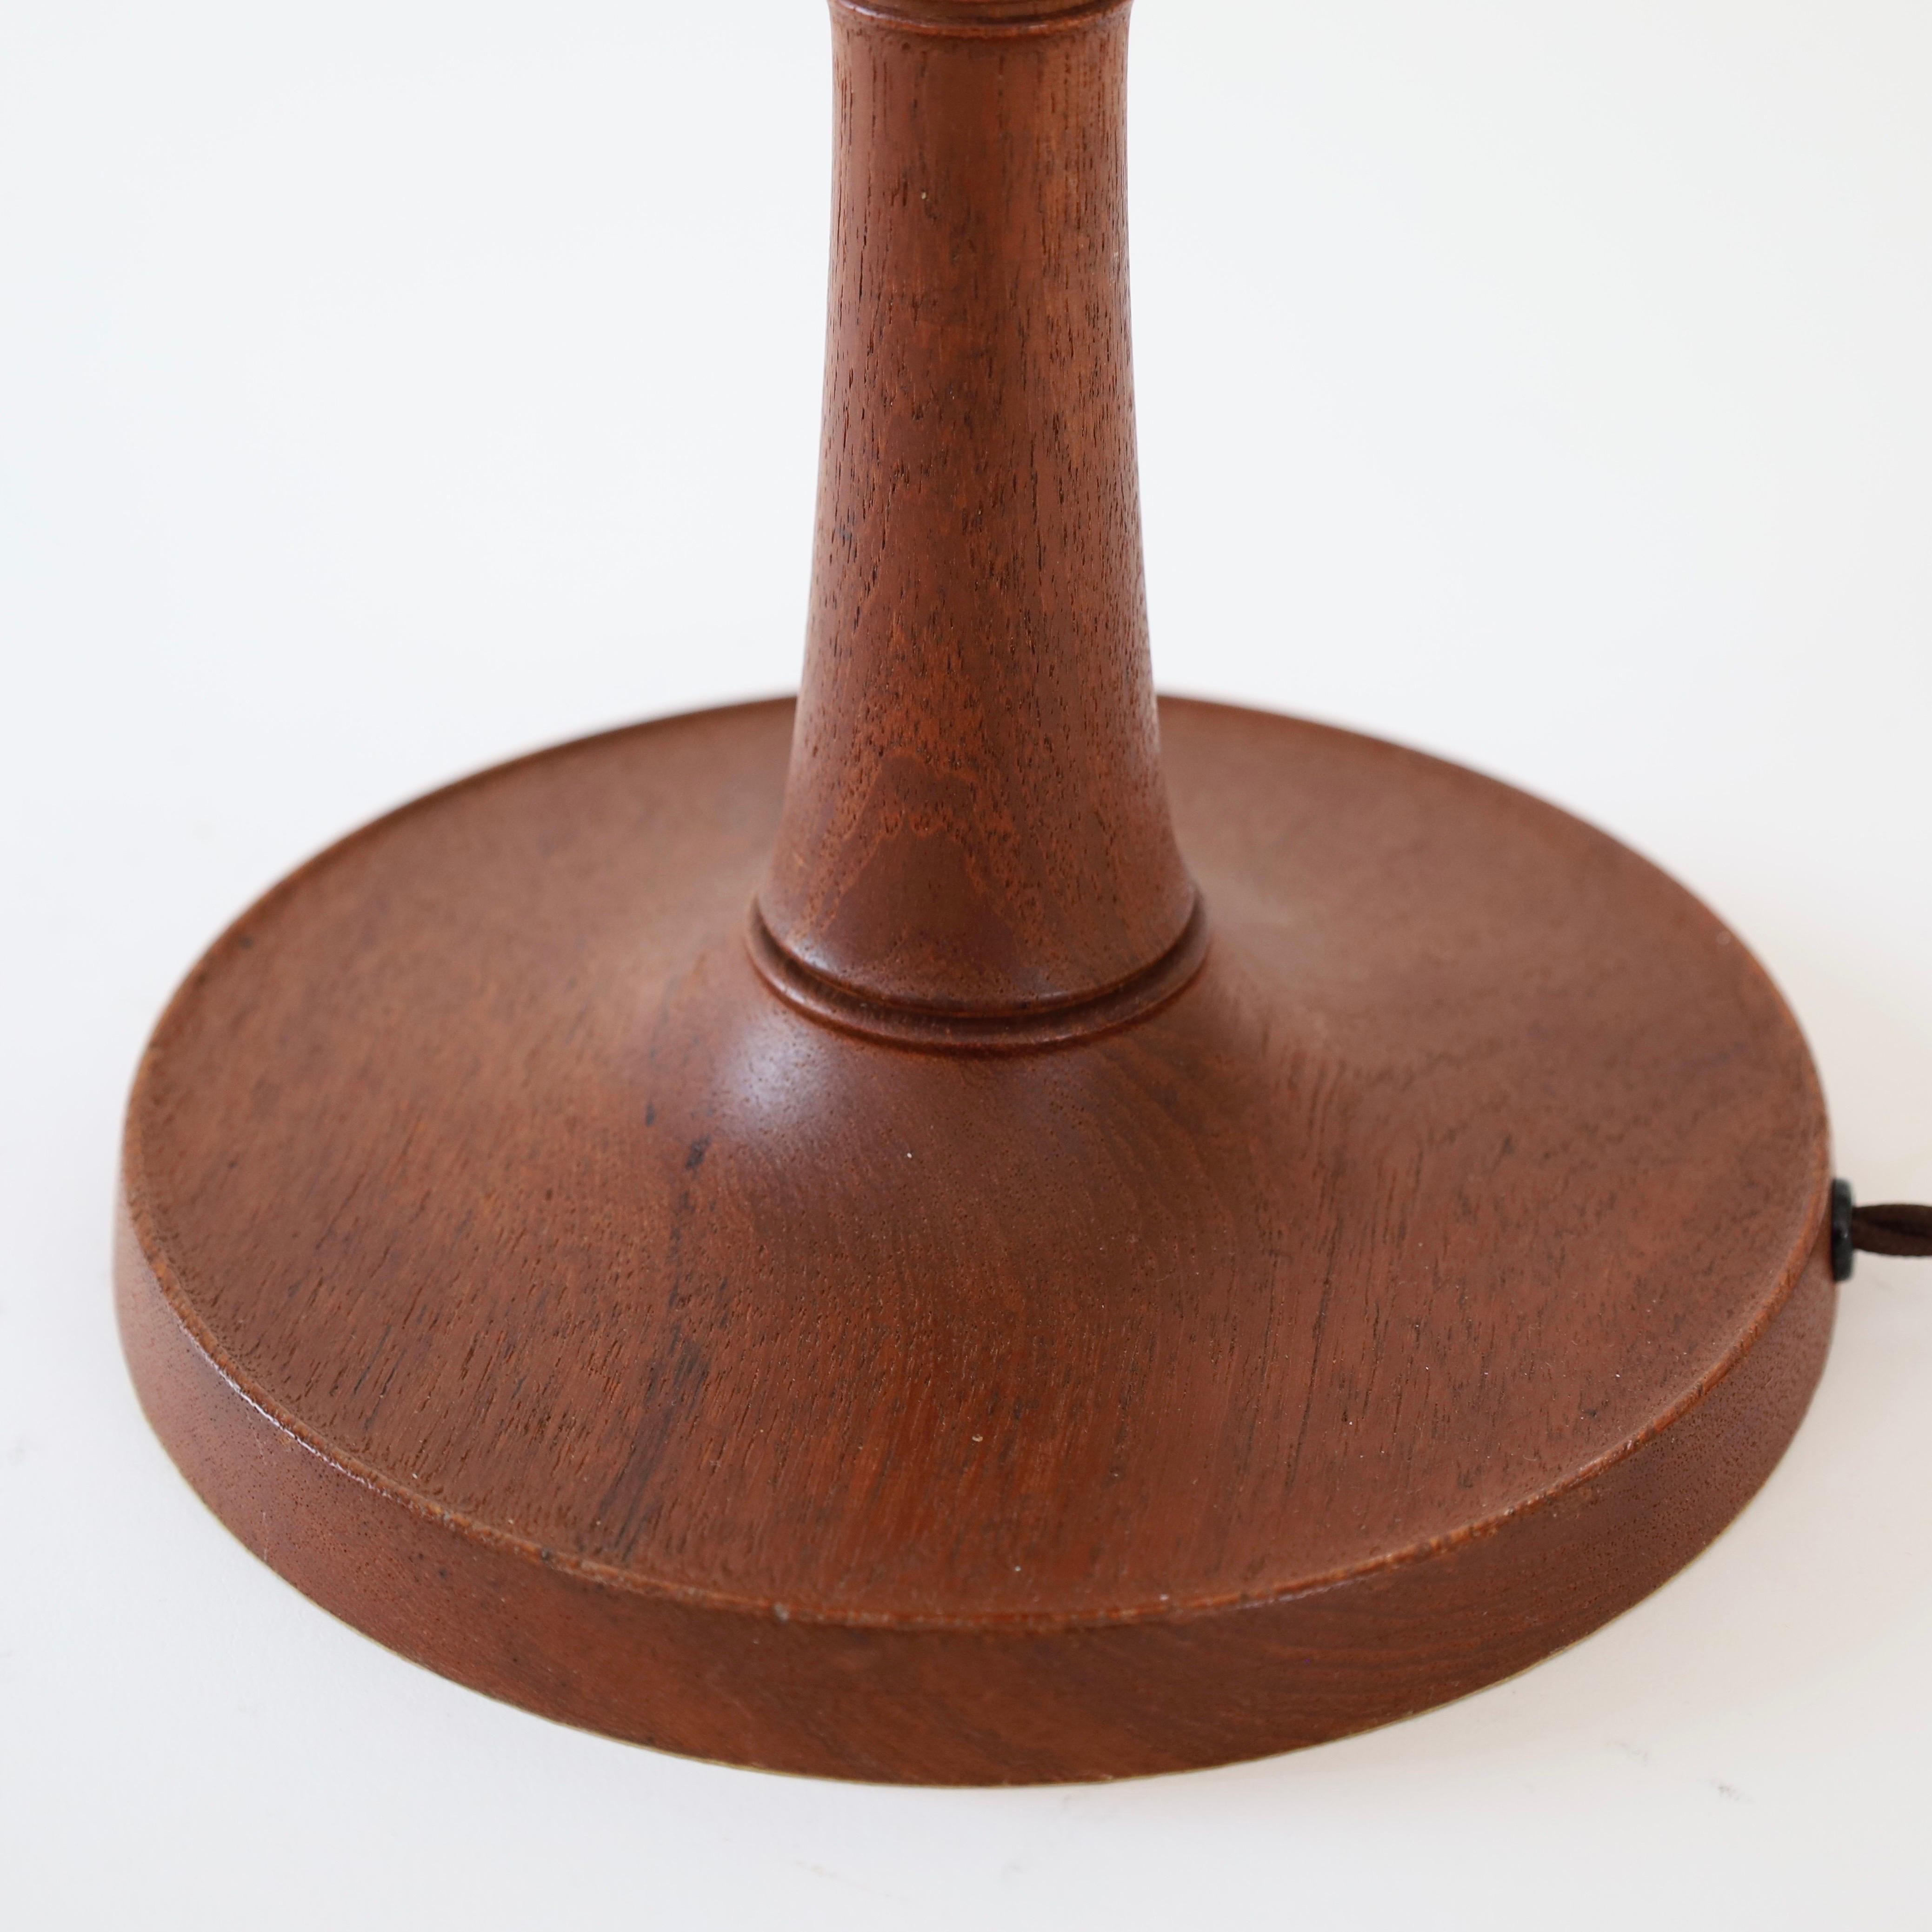 Danish Modern Le Klint oak wood table lamp, 1950s, Denmark For Sale 5